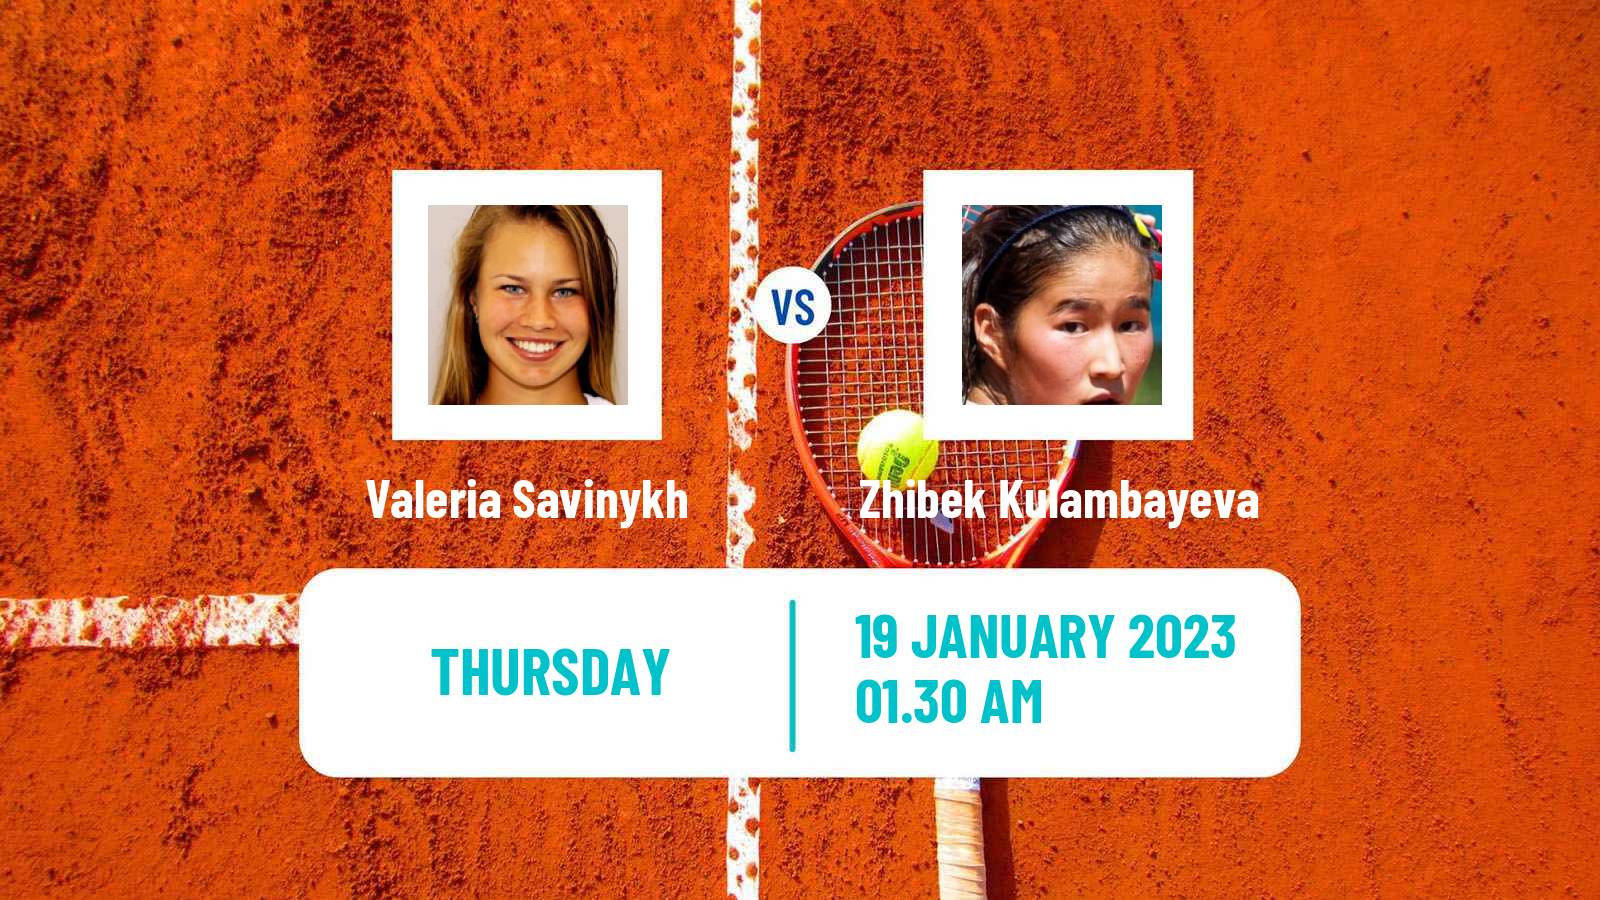 Tennis ITF Tournaments Valeria Savinykh - Zhibek Kulambayeva